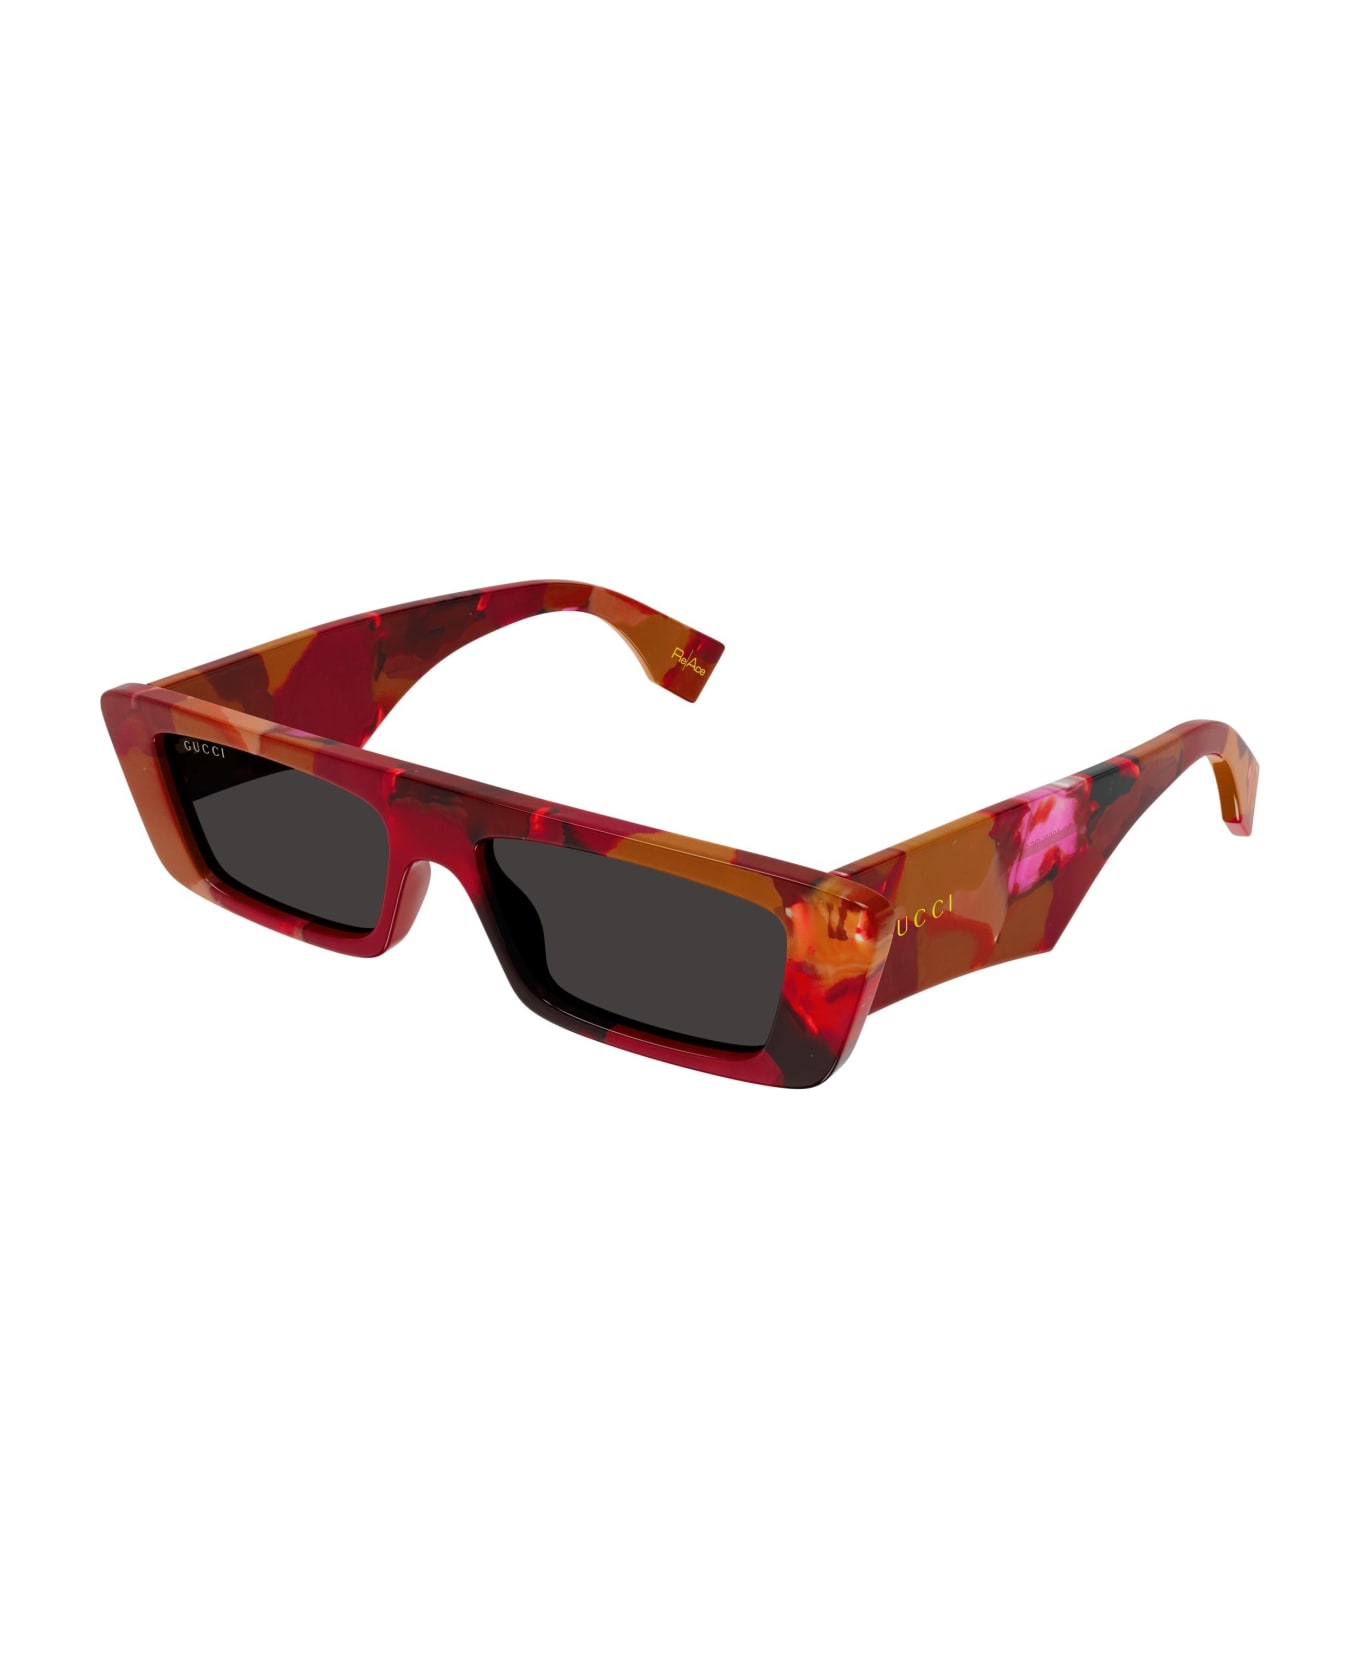 Gucci Eyewear Sunglasses - Rosso/Grigio